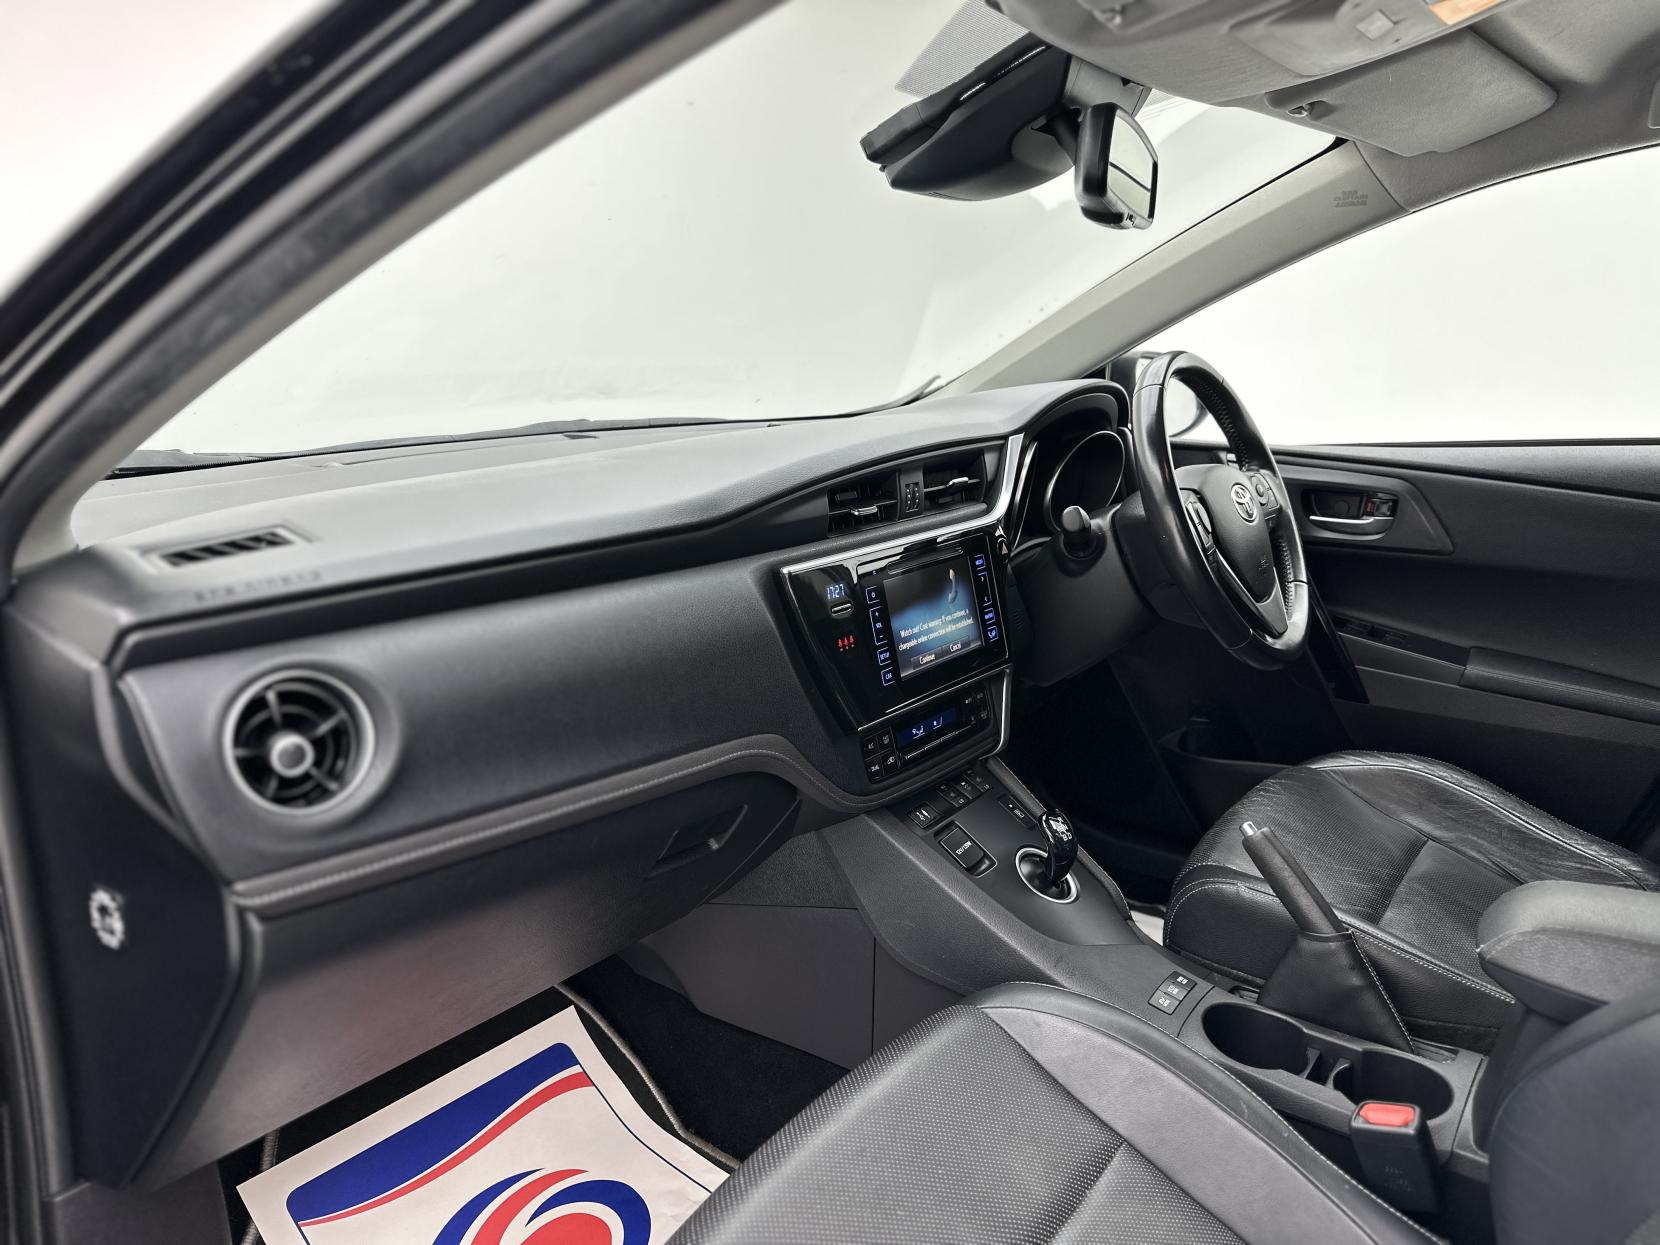 Toyota Auris 1.8 VVT-h Excel Touring Sports CVT Euro 6 (s/s) 5dr